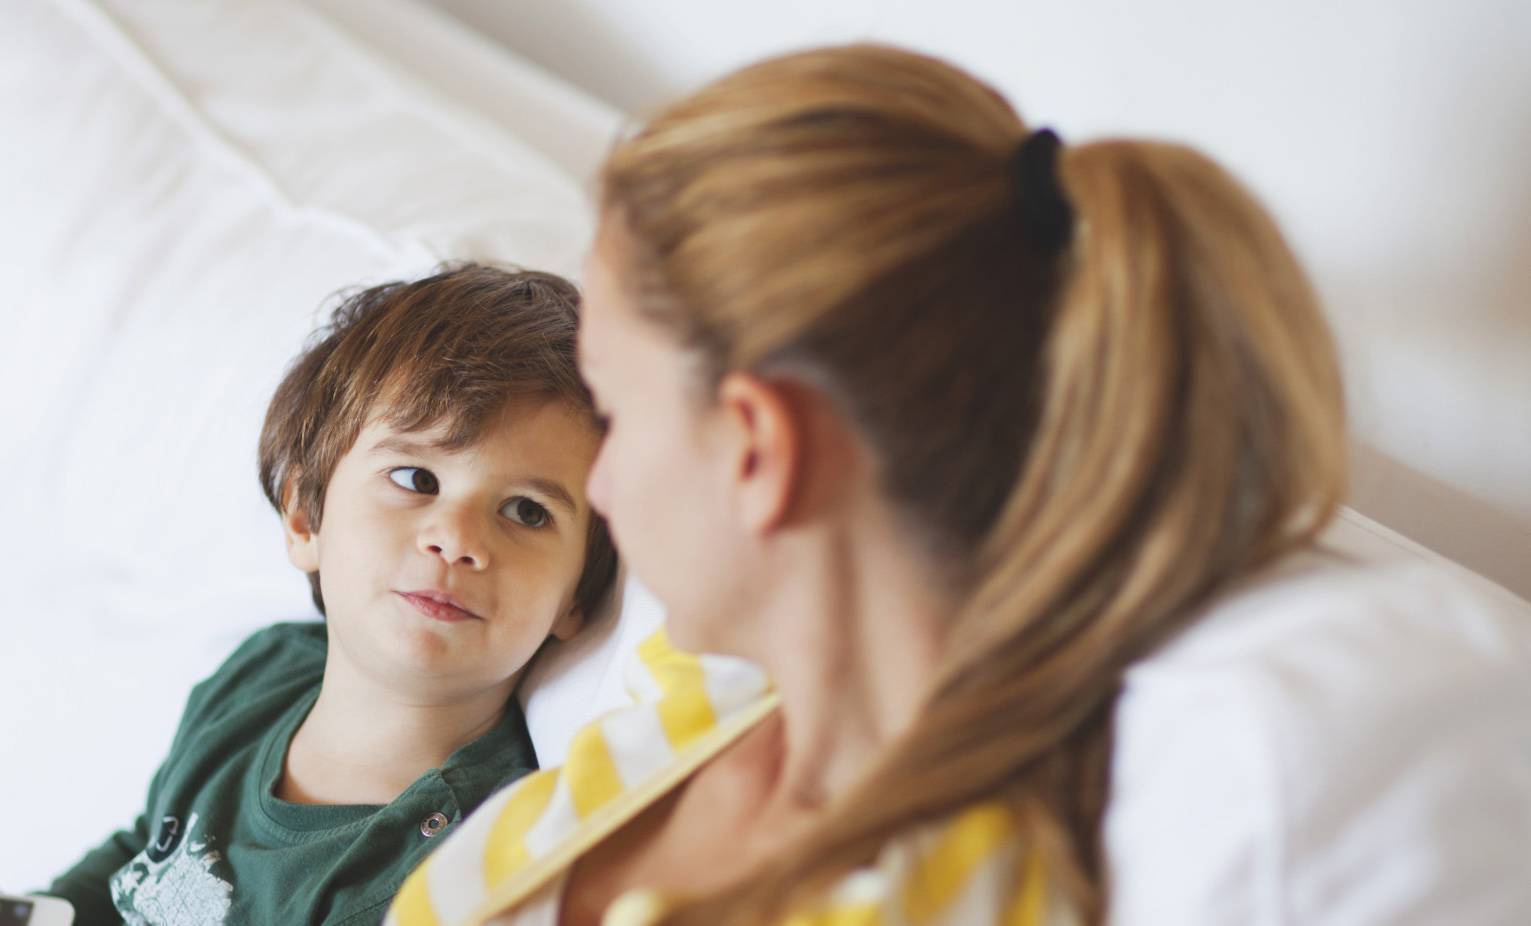 Воспитание и отношения с ребенком 5 лет - советы родителям